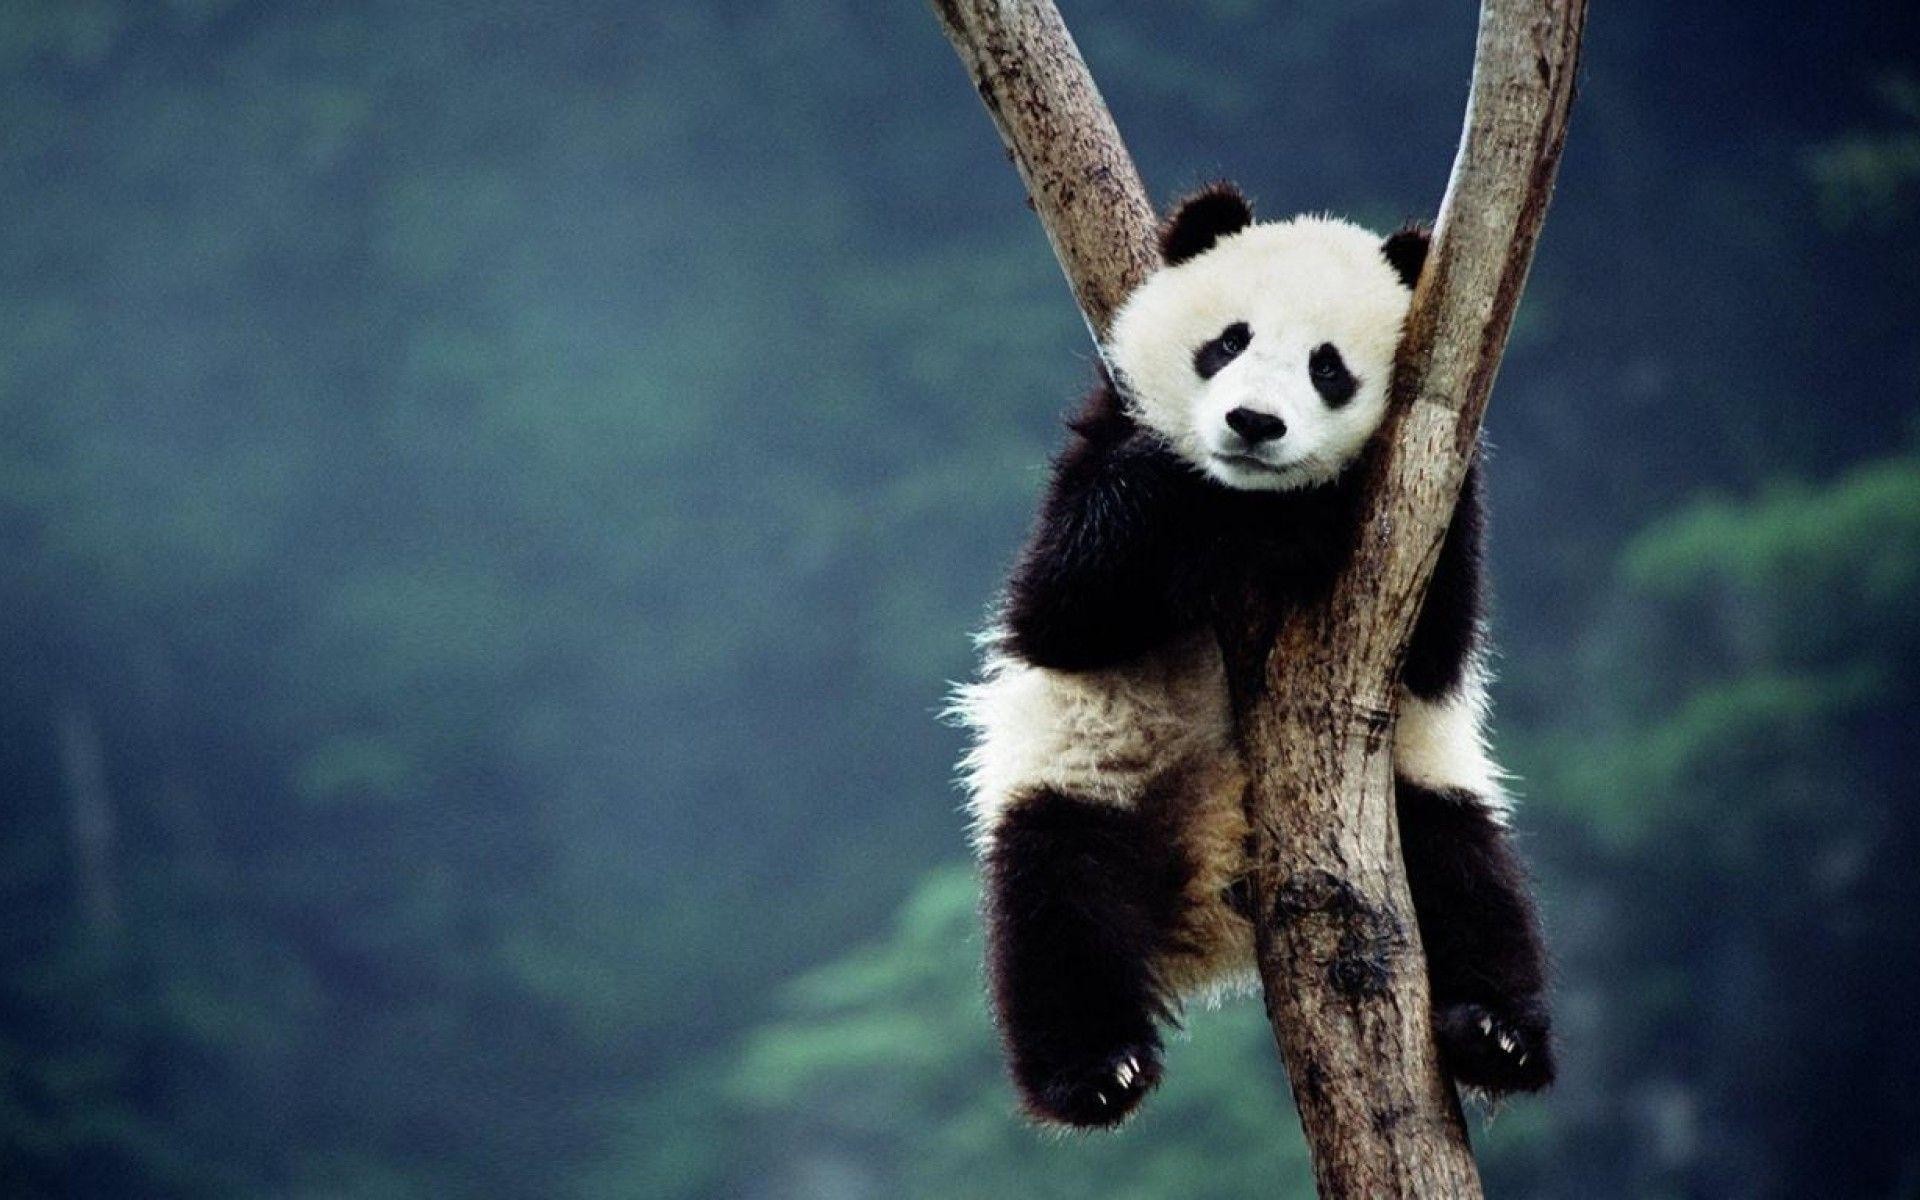 Hãy thưởng thức hình nền đáng yêu về gấu trúc panda! Sự đáng yêu và dễ thương của chúng sẽ khiến bạn phải cười toe toét. Hãy tải xuống ngay để làm hình nền cho điện thoại hoặc máy tính của mình.